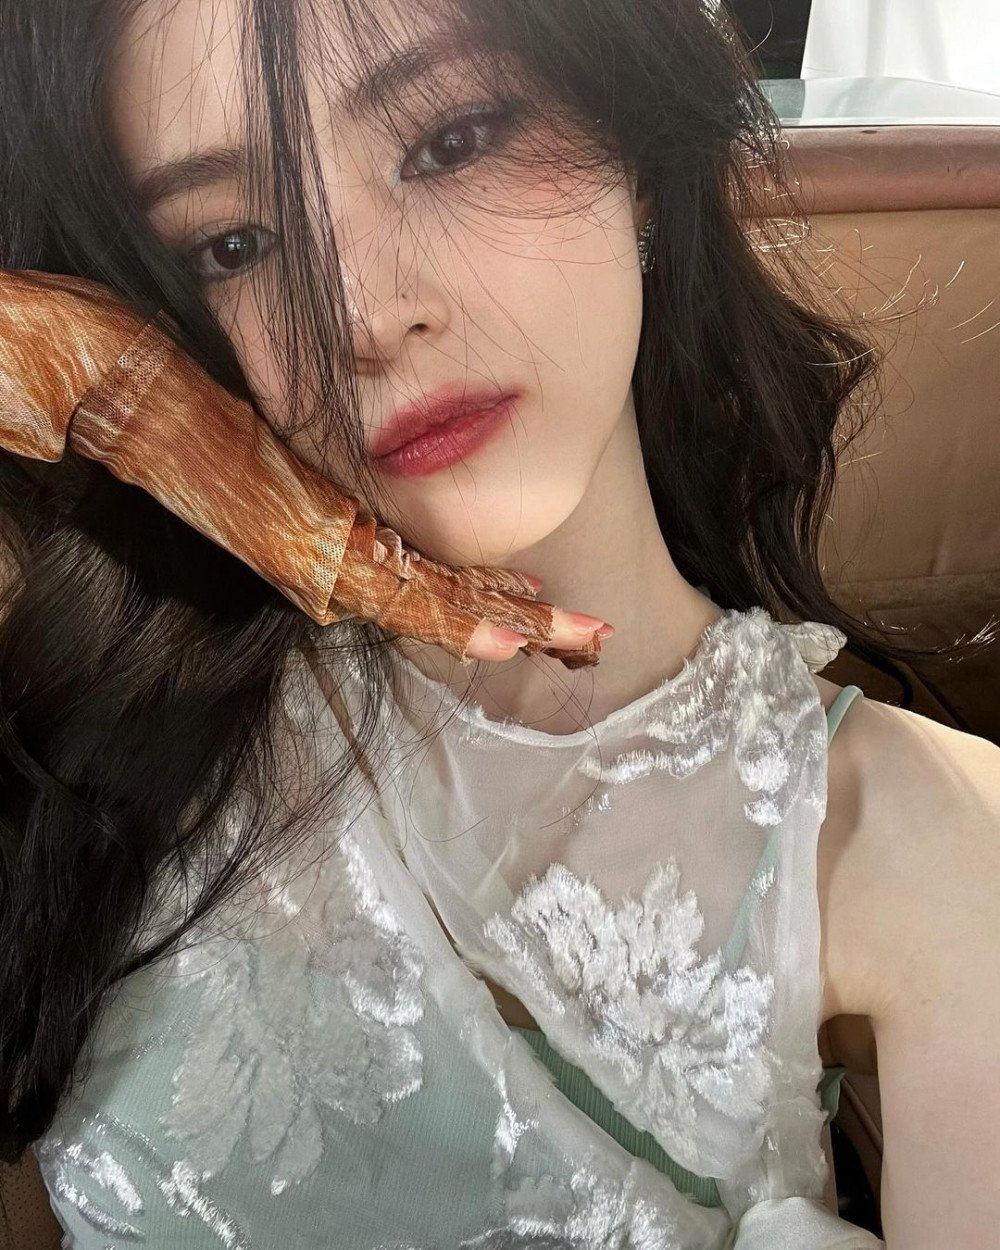 Хан Со Хи опубликовала селфи впервые после скандала на Неделе моды в Париже